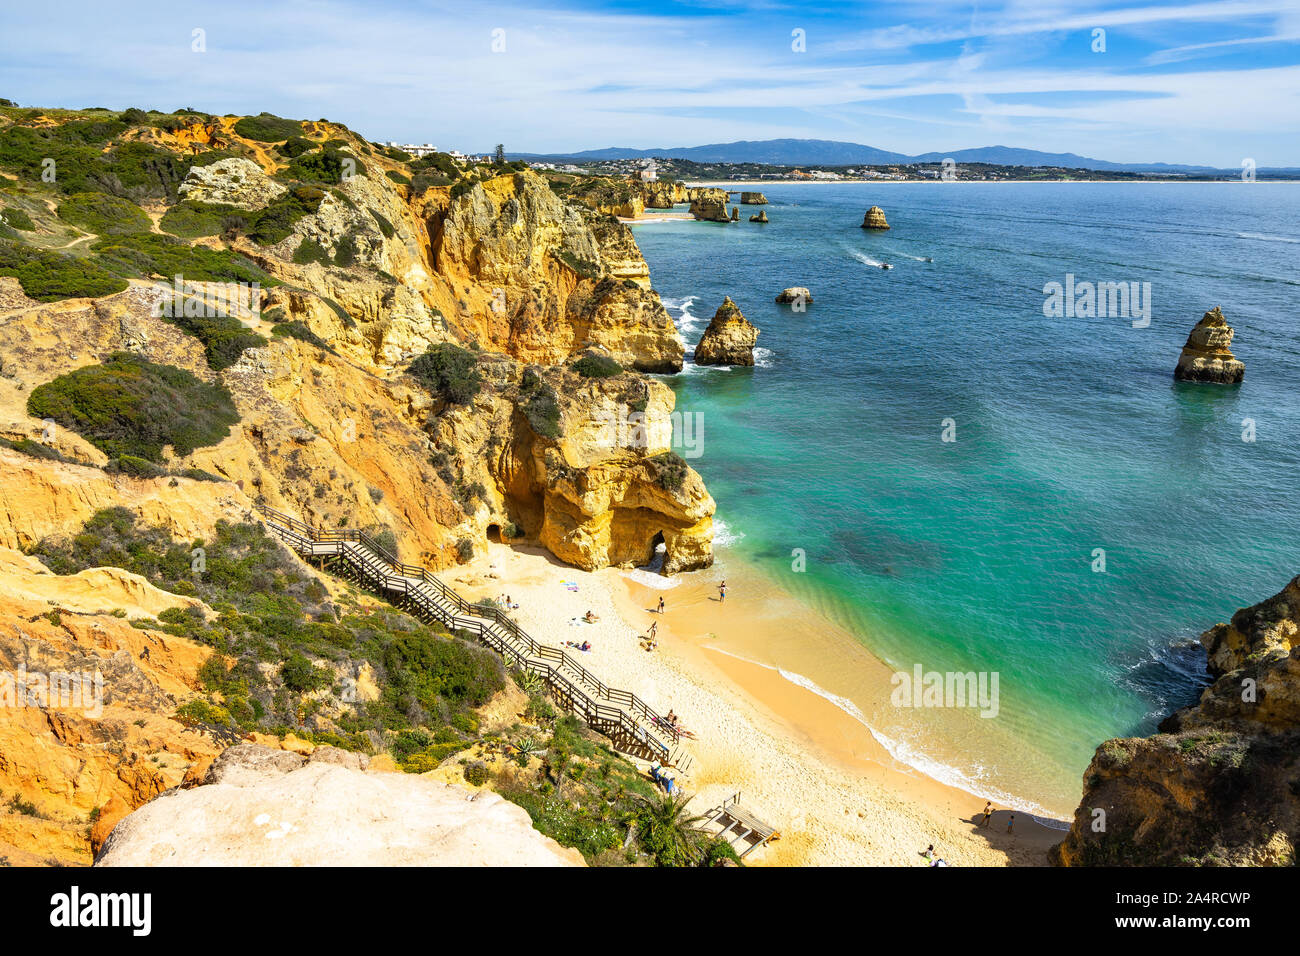 Praia do Camilo mit seiner klaren, türkisfarbenen Wasser ist einer der kultigsten Strand in der Region der Algarve, Portugal Stockfoto